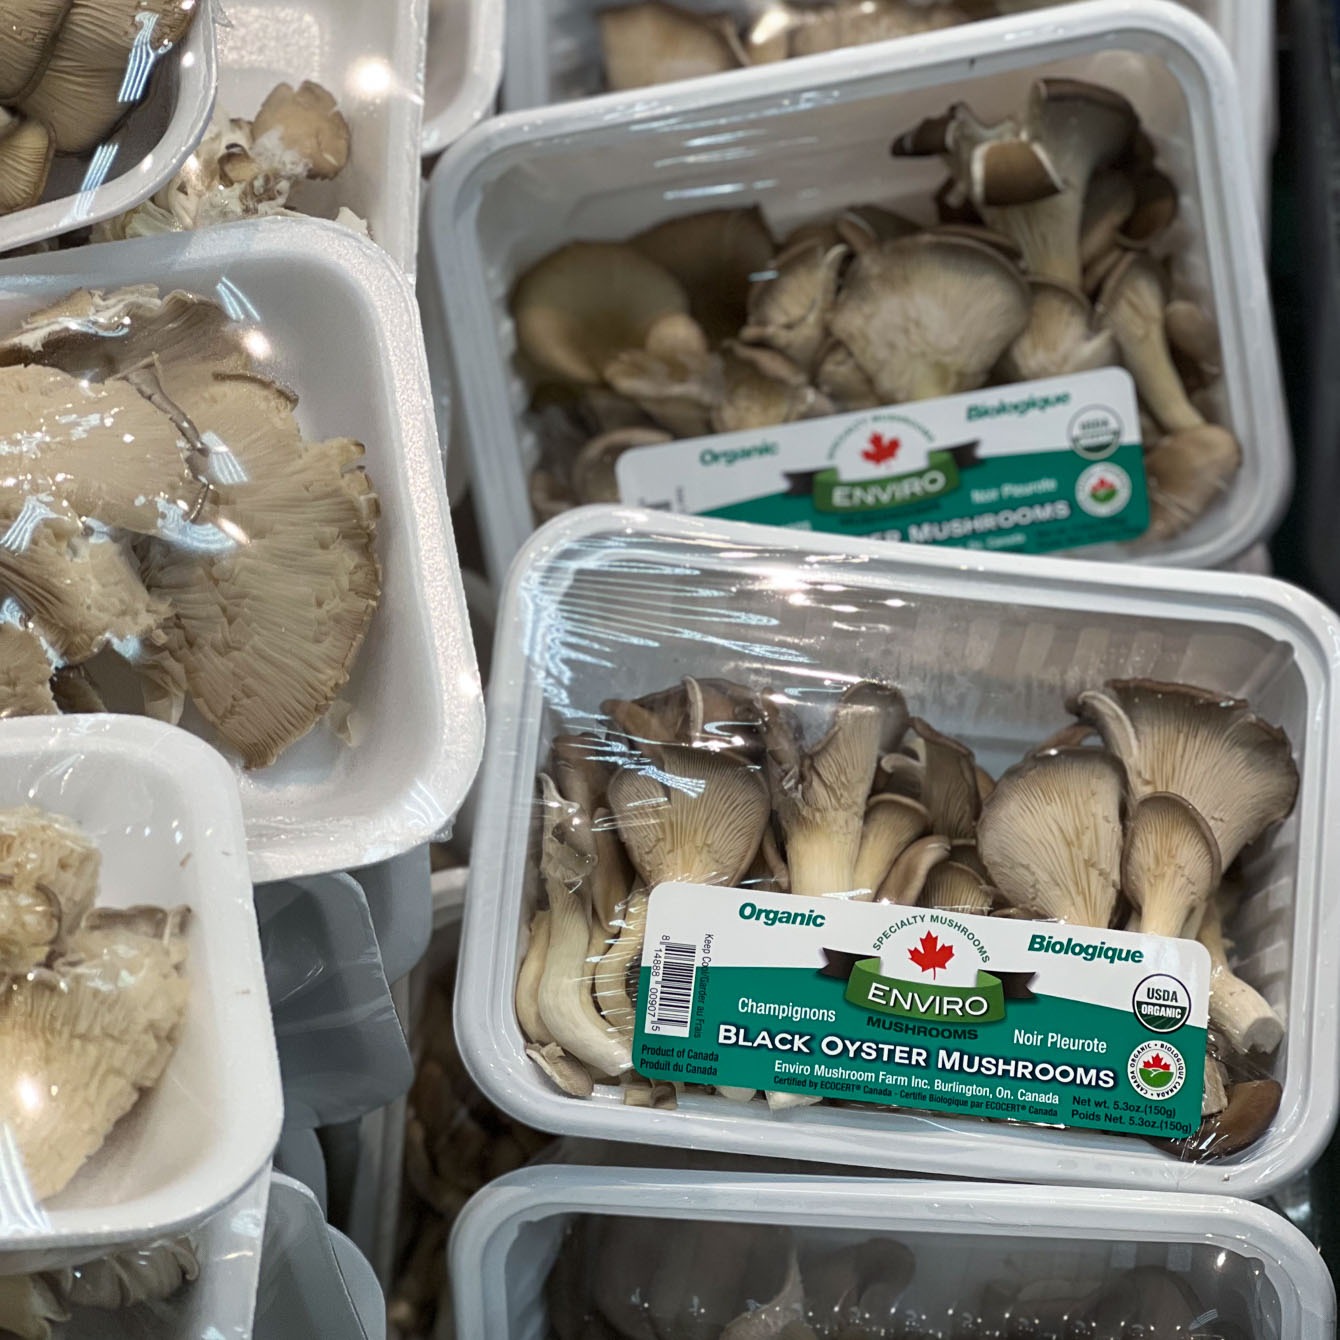 Bundles of oyster mushroom in the package